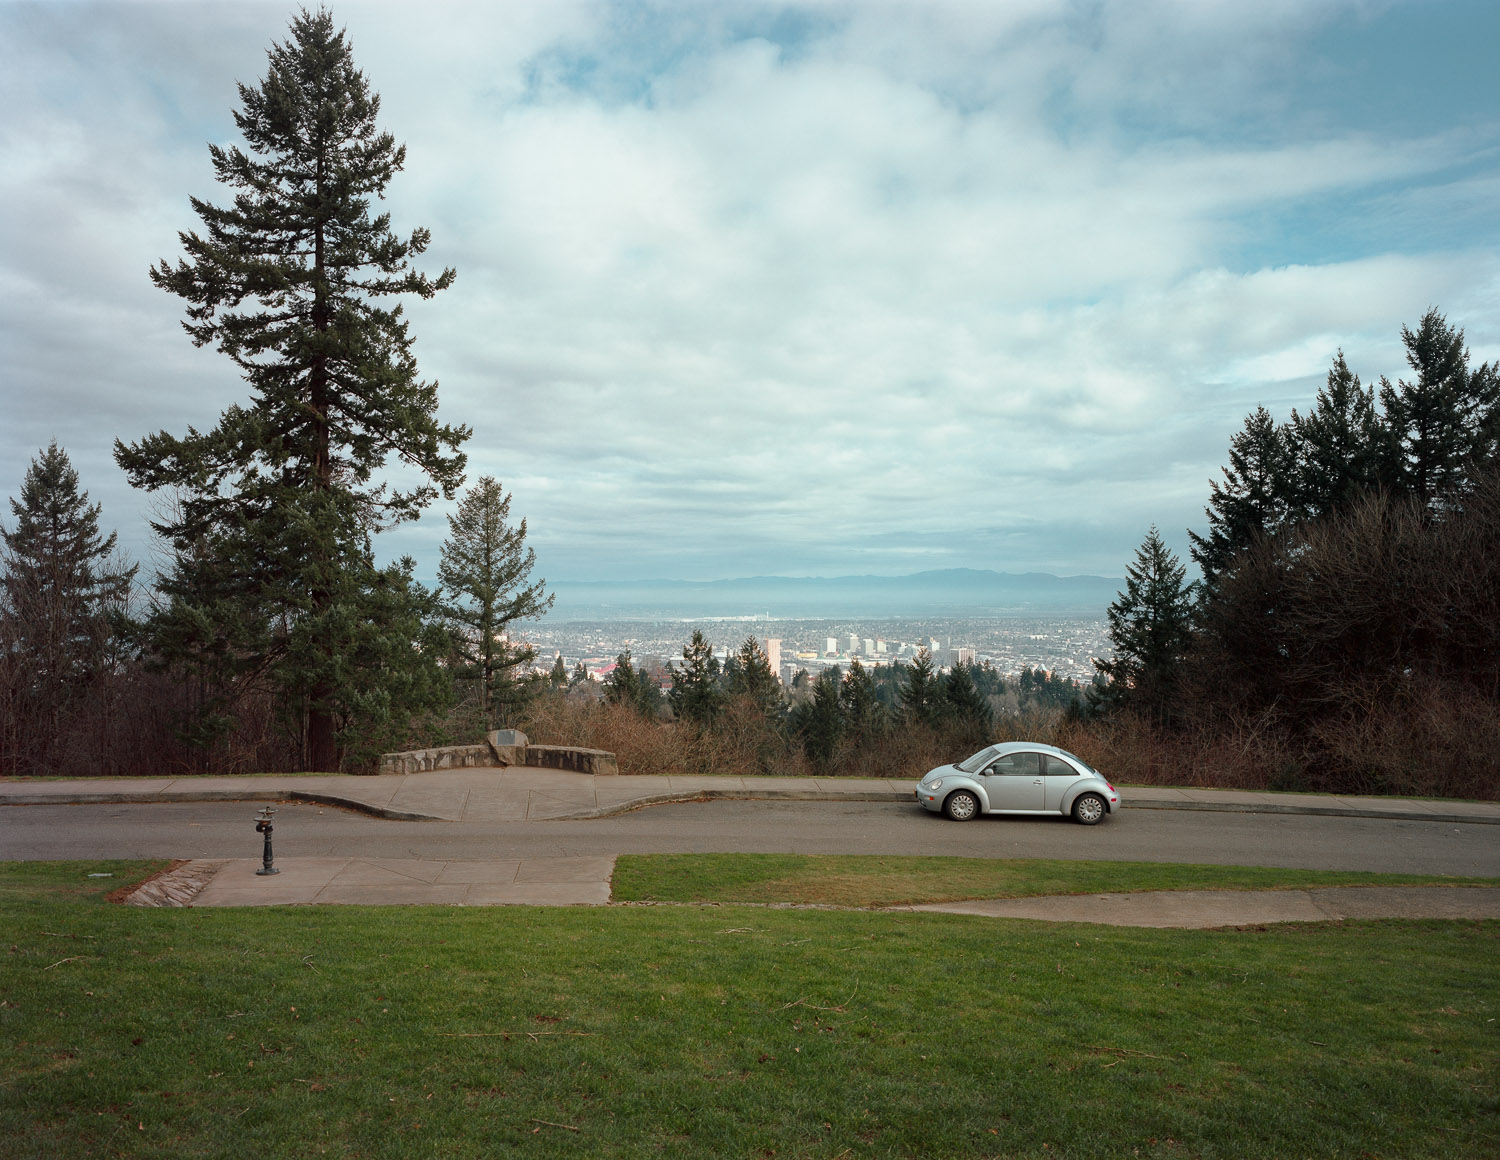  Vista point, Council Crest Park, Portland, Oregon, 2015 